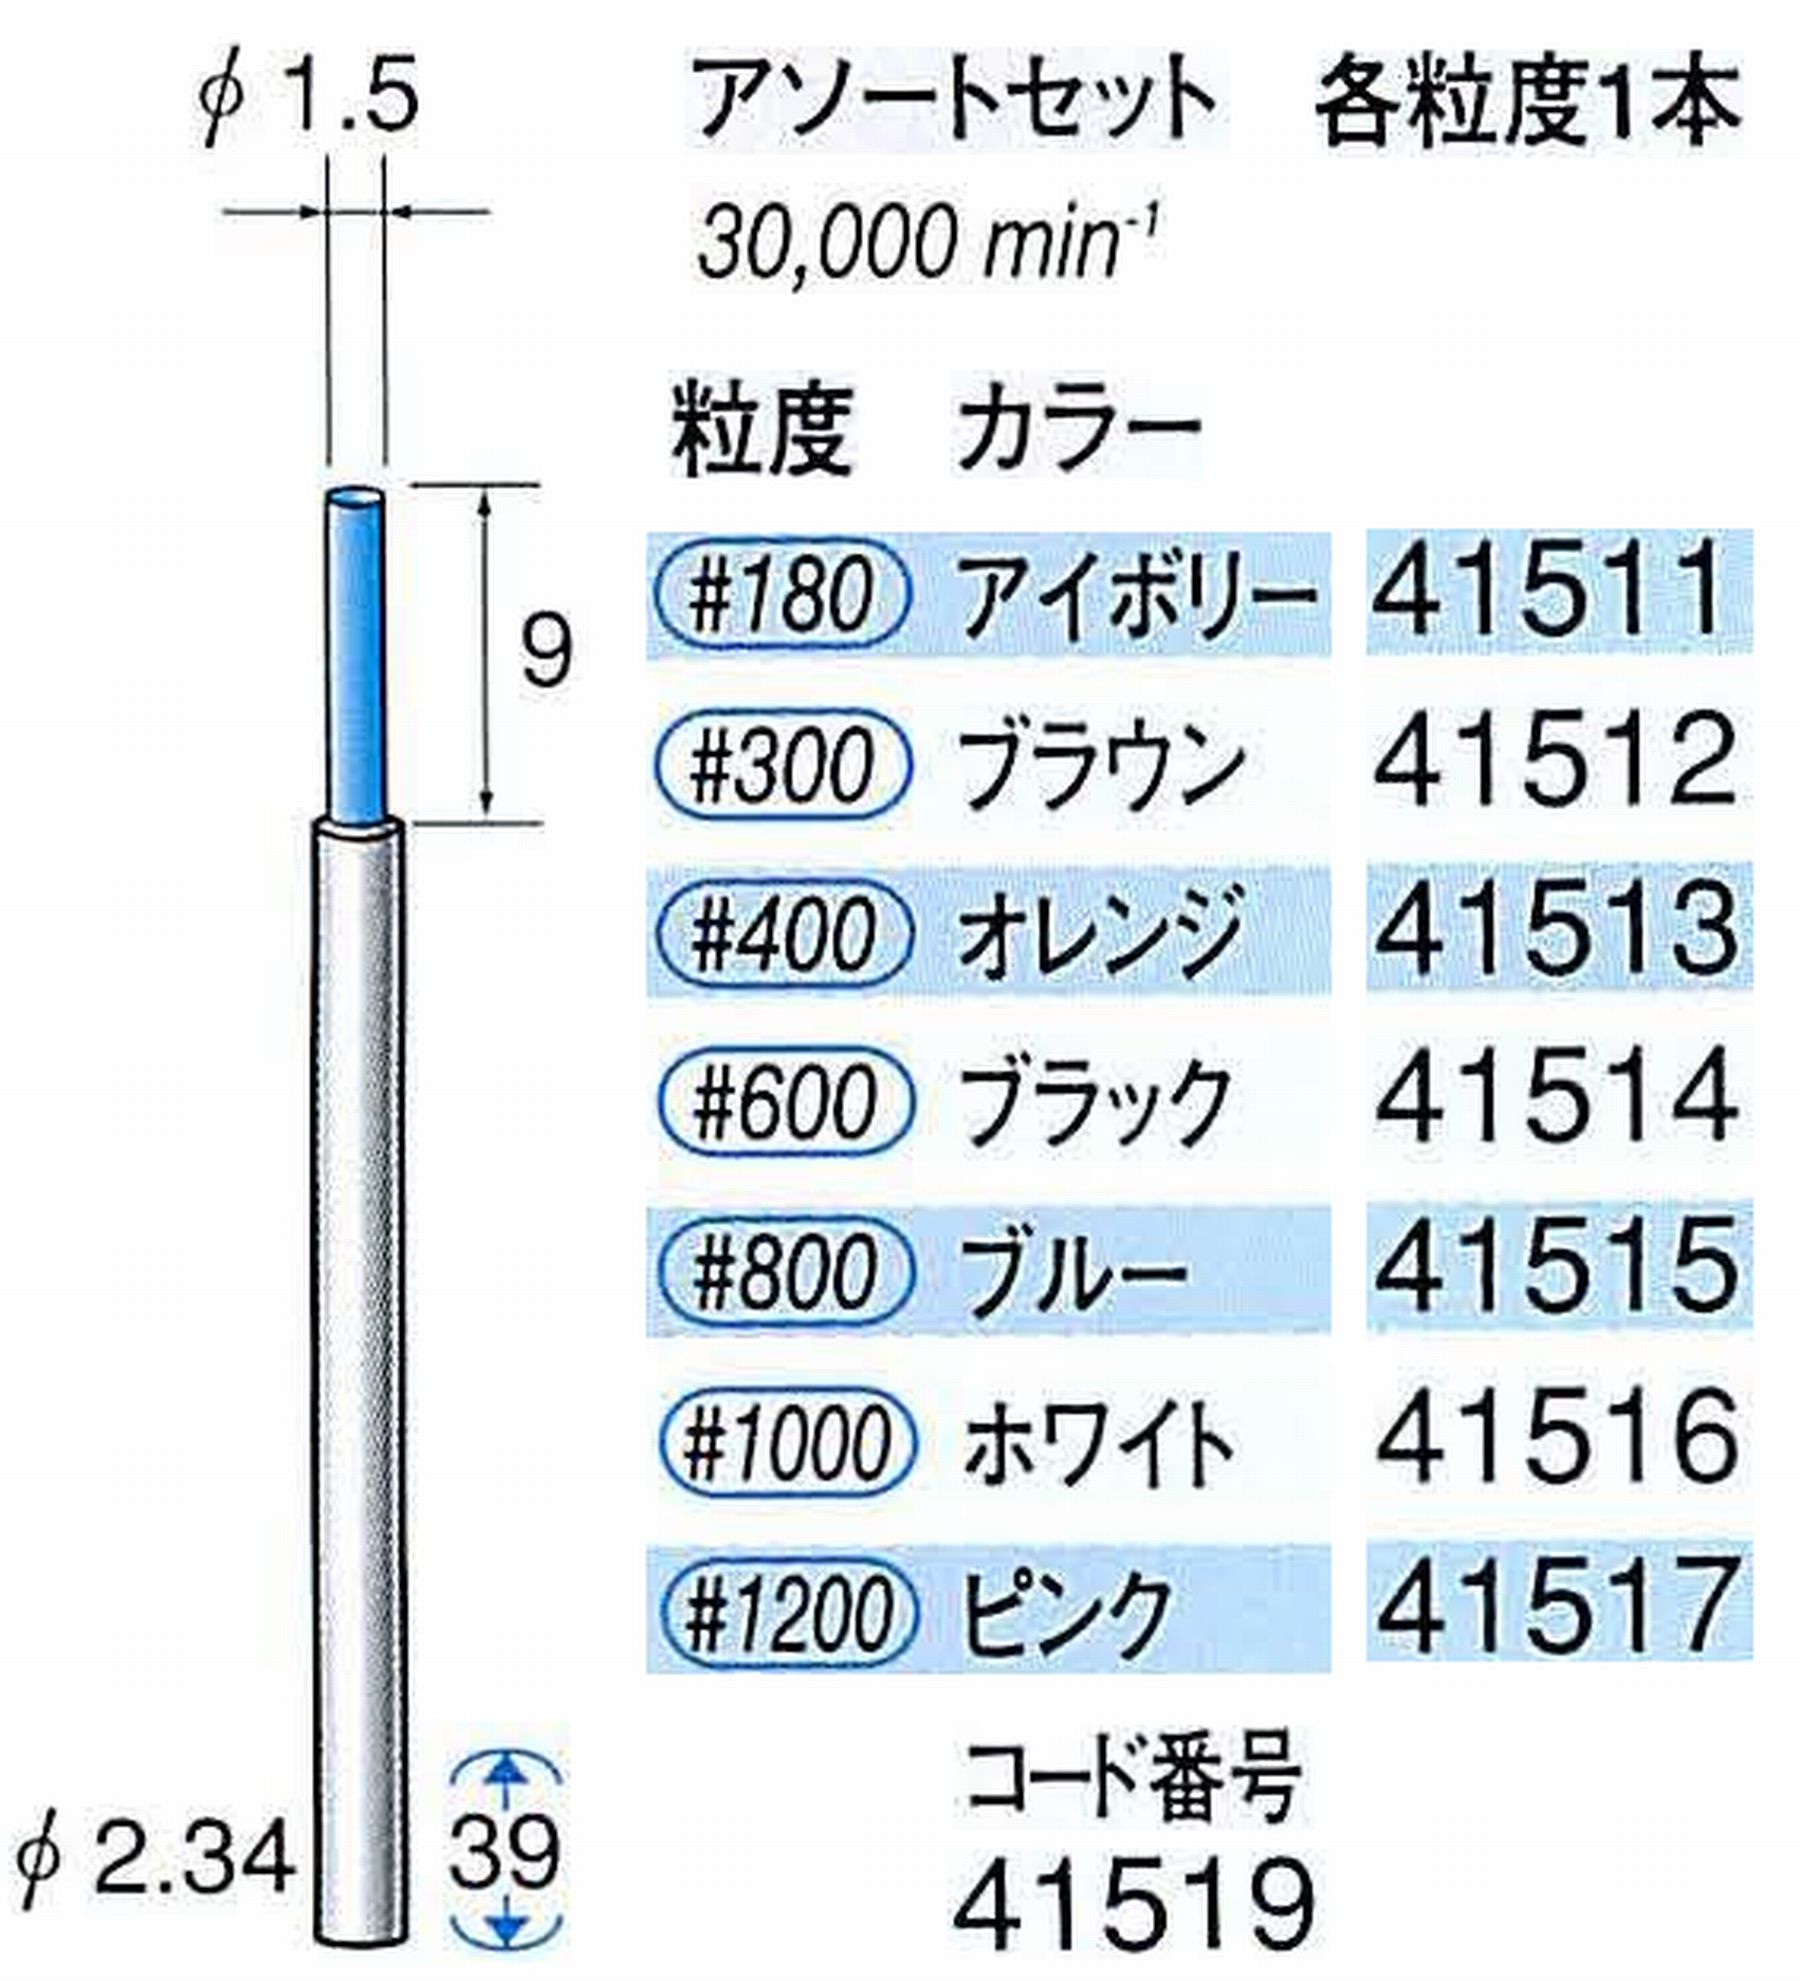 ナカニシ/NAKANISHI セラファイバー精密軸付砥石 アソートセット(各粒度1本) 軸径(シャンク) φ2.34mm 41519